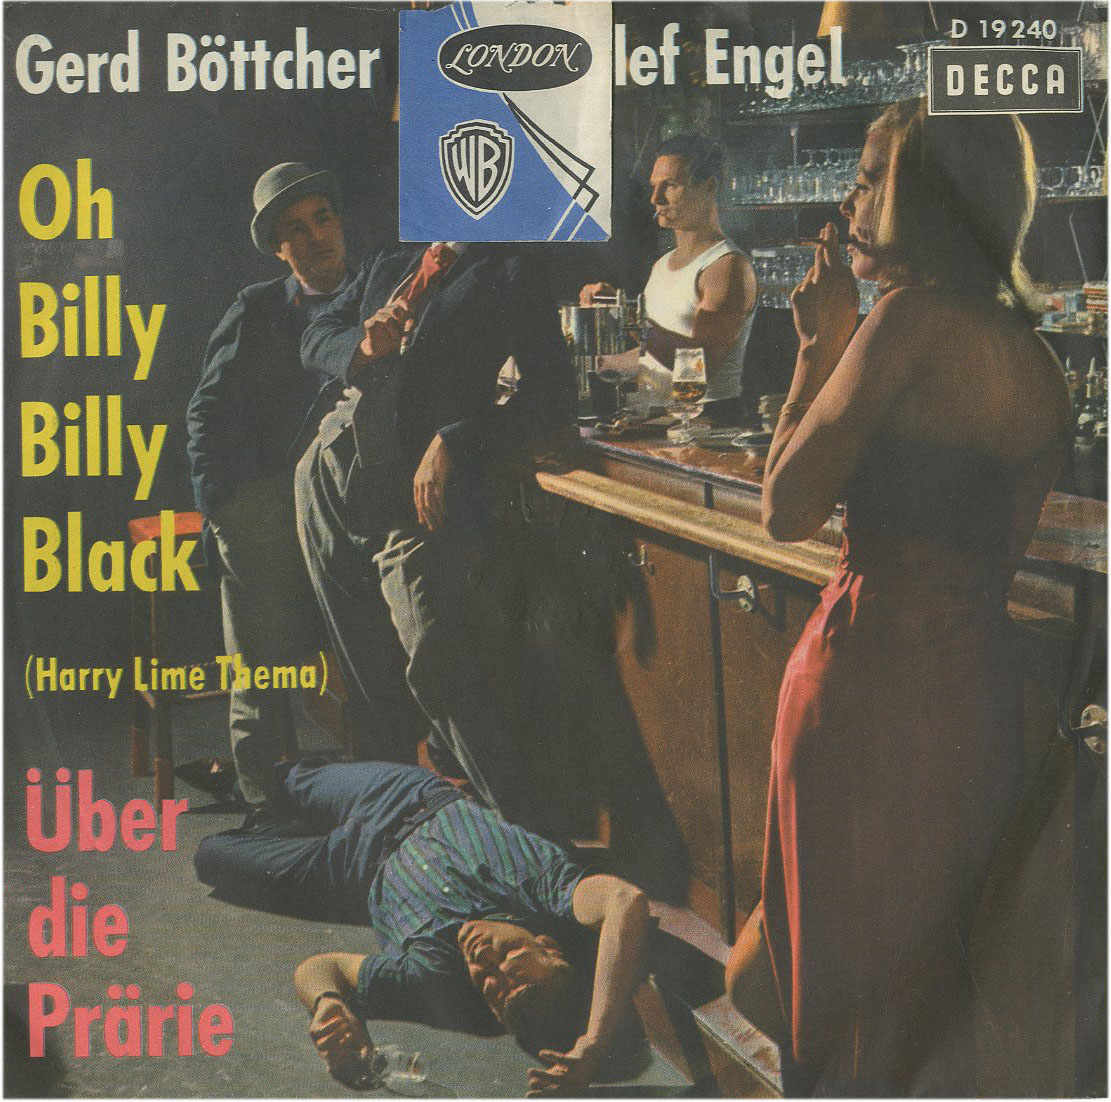 Albumcover Gerd Böttcher und Detlef Engel - Oh Billy Billy Black (Harry Lime Theme) / Über die Prärie (Indian Love Call)